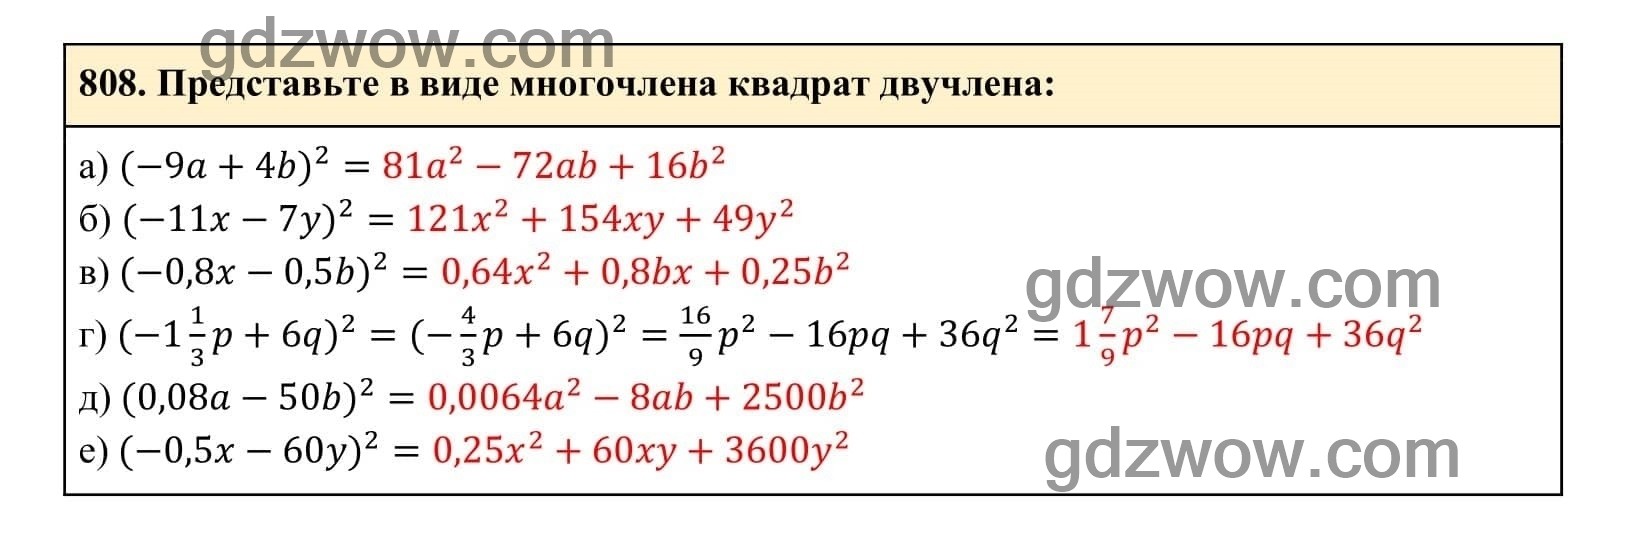 Упражнение 808 - ГДЗ по Алгебре 7 класс Учебник Макарычев (решебник) - GDZwow